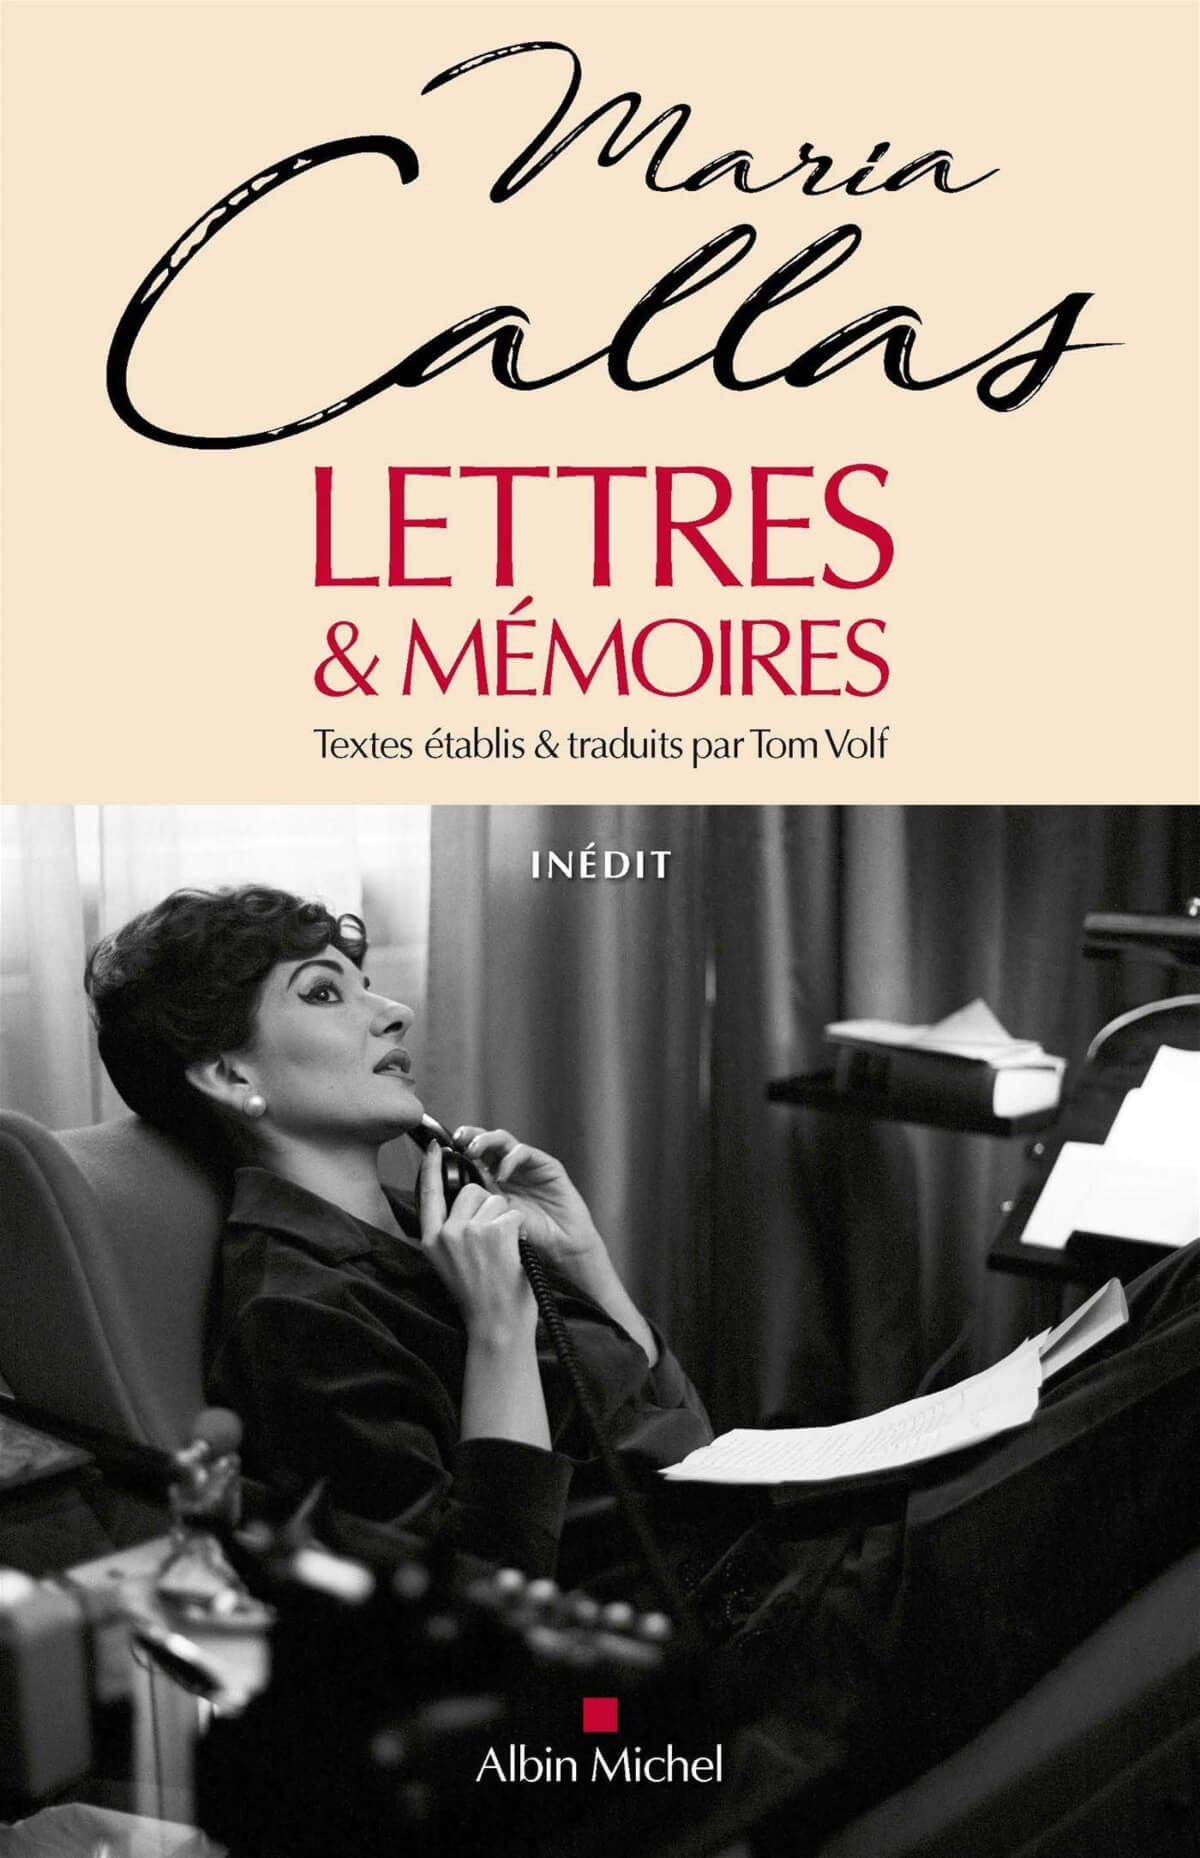 couverture du livre Callas : Lettre et mémoires de Tom Volk